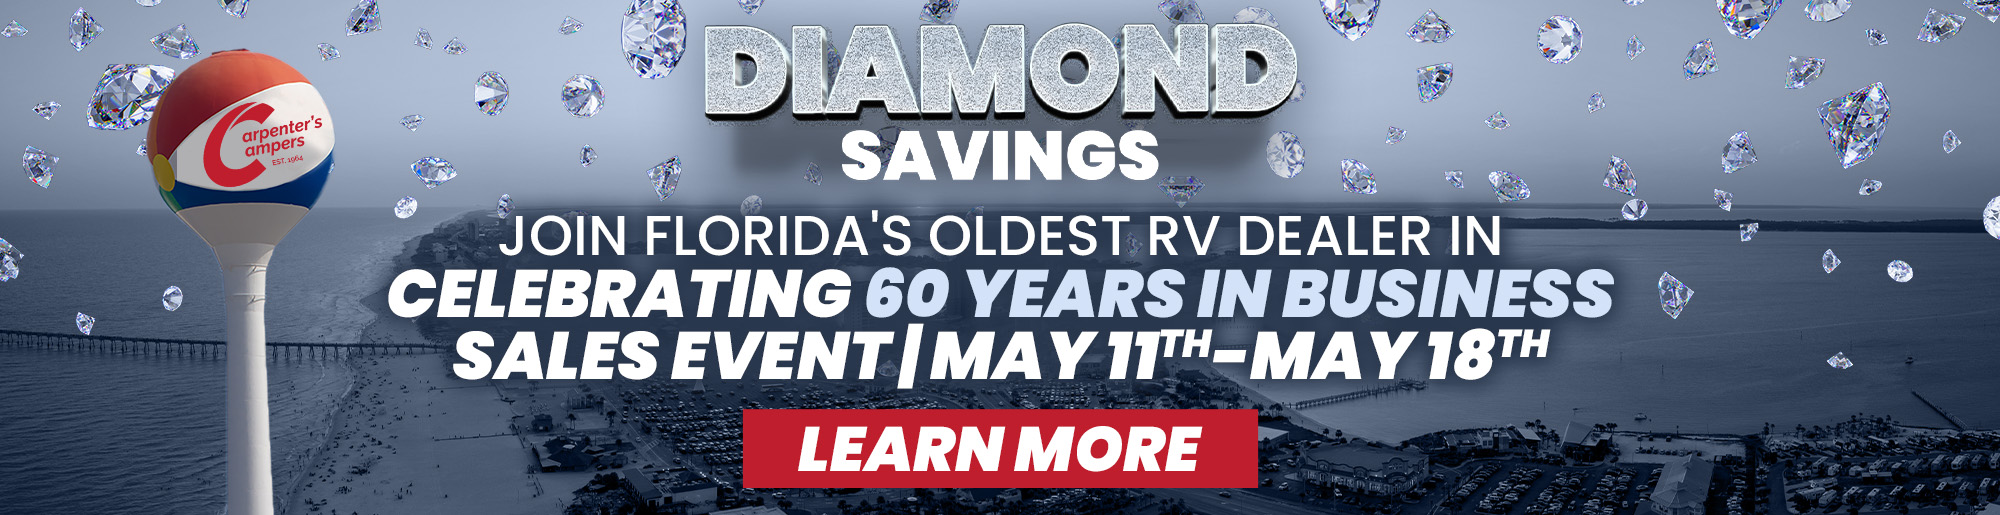 Diamond savings